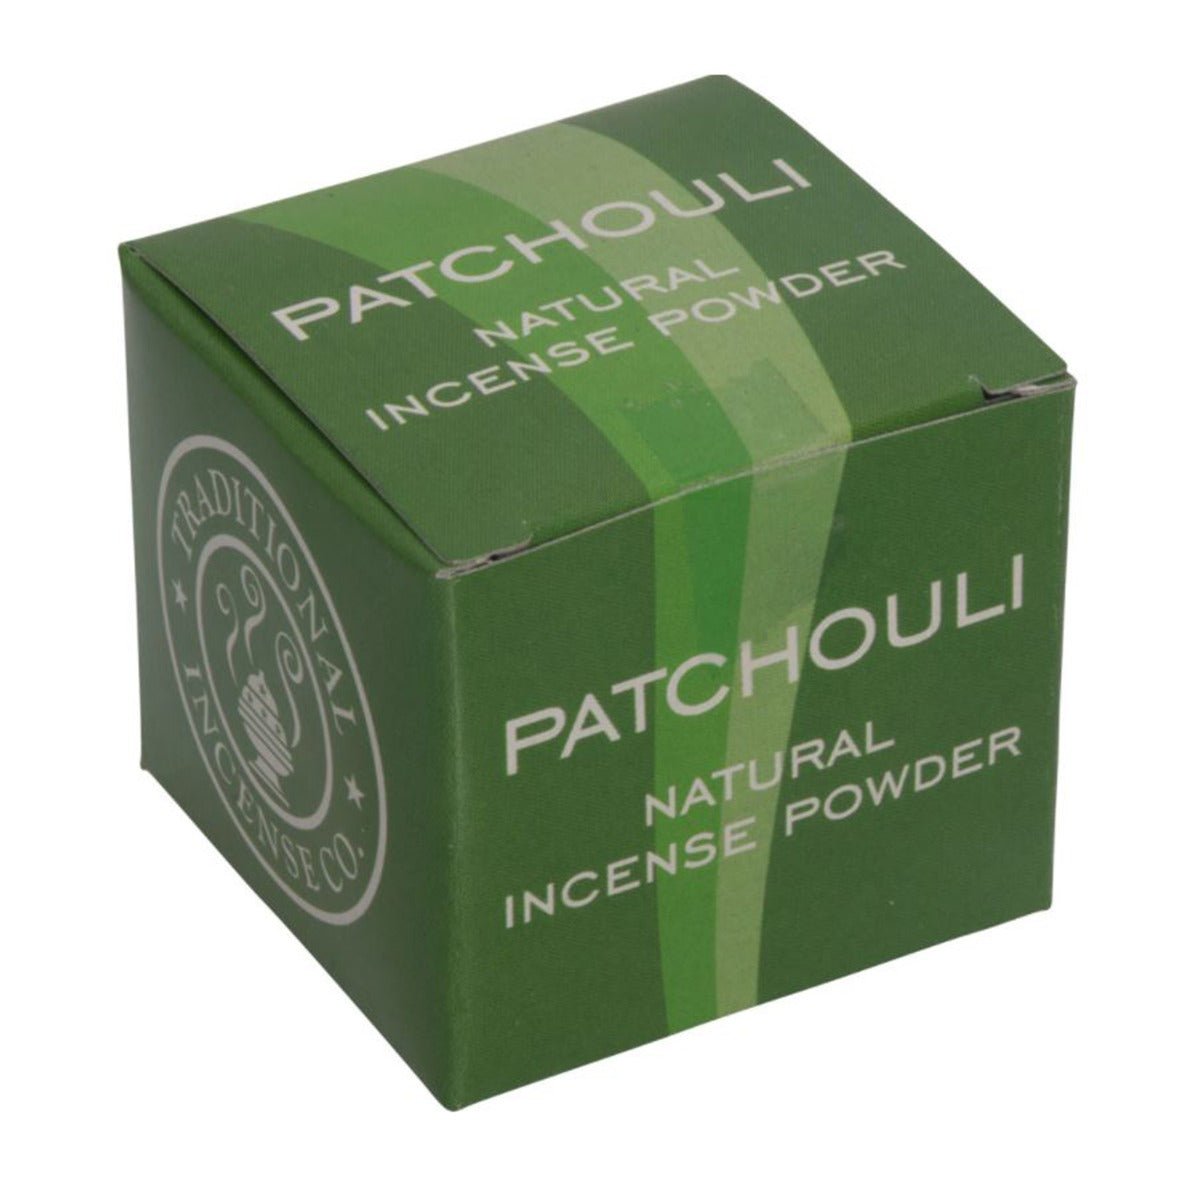 Patchouli Powder Incense - 13 Moons